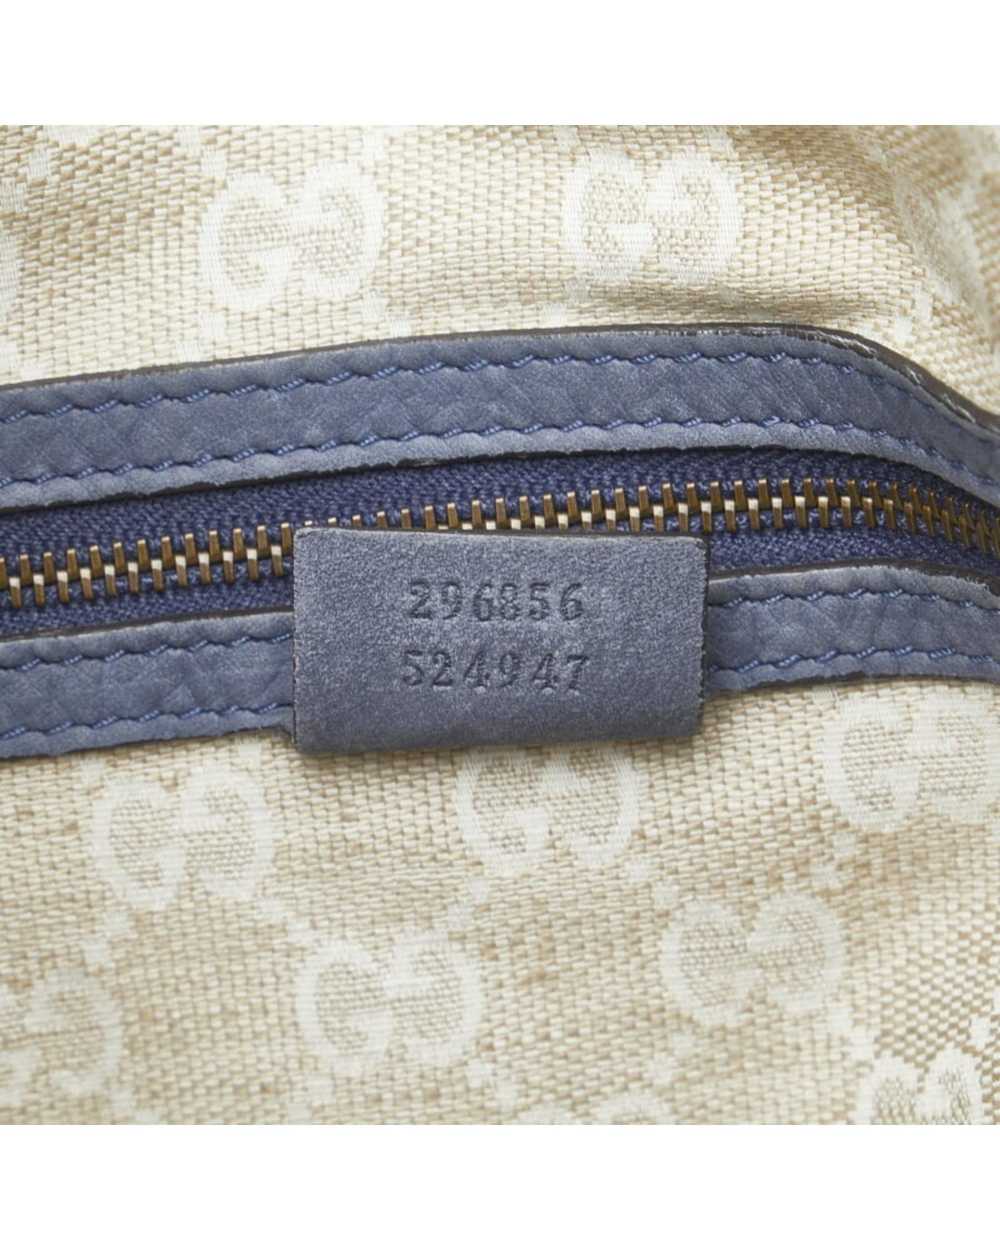 Gucci Luxury Soft Leather Shoulder Bag - image 9